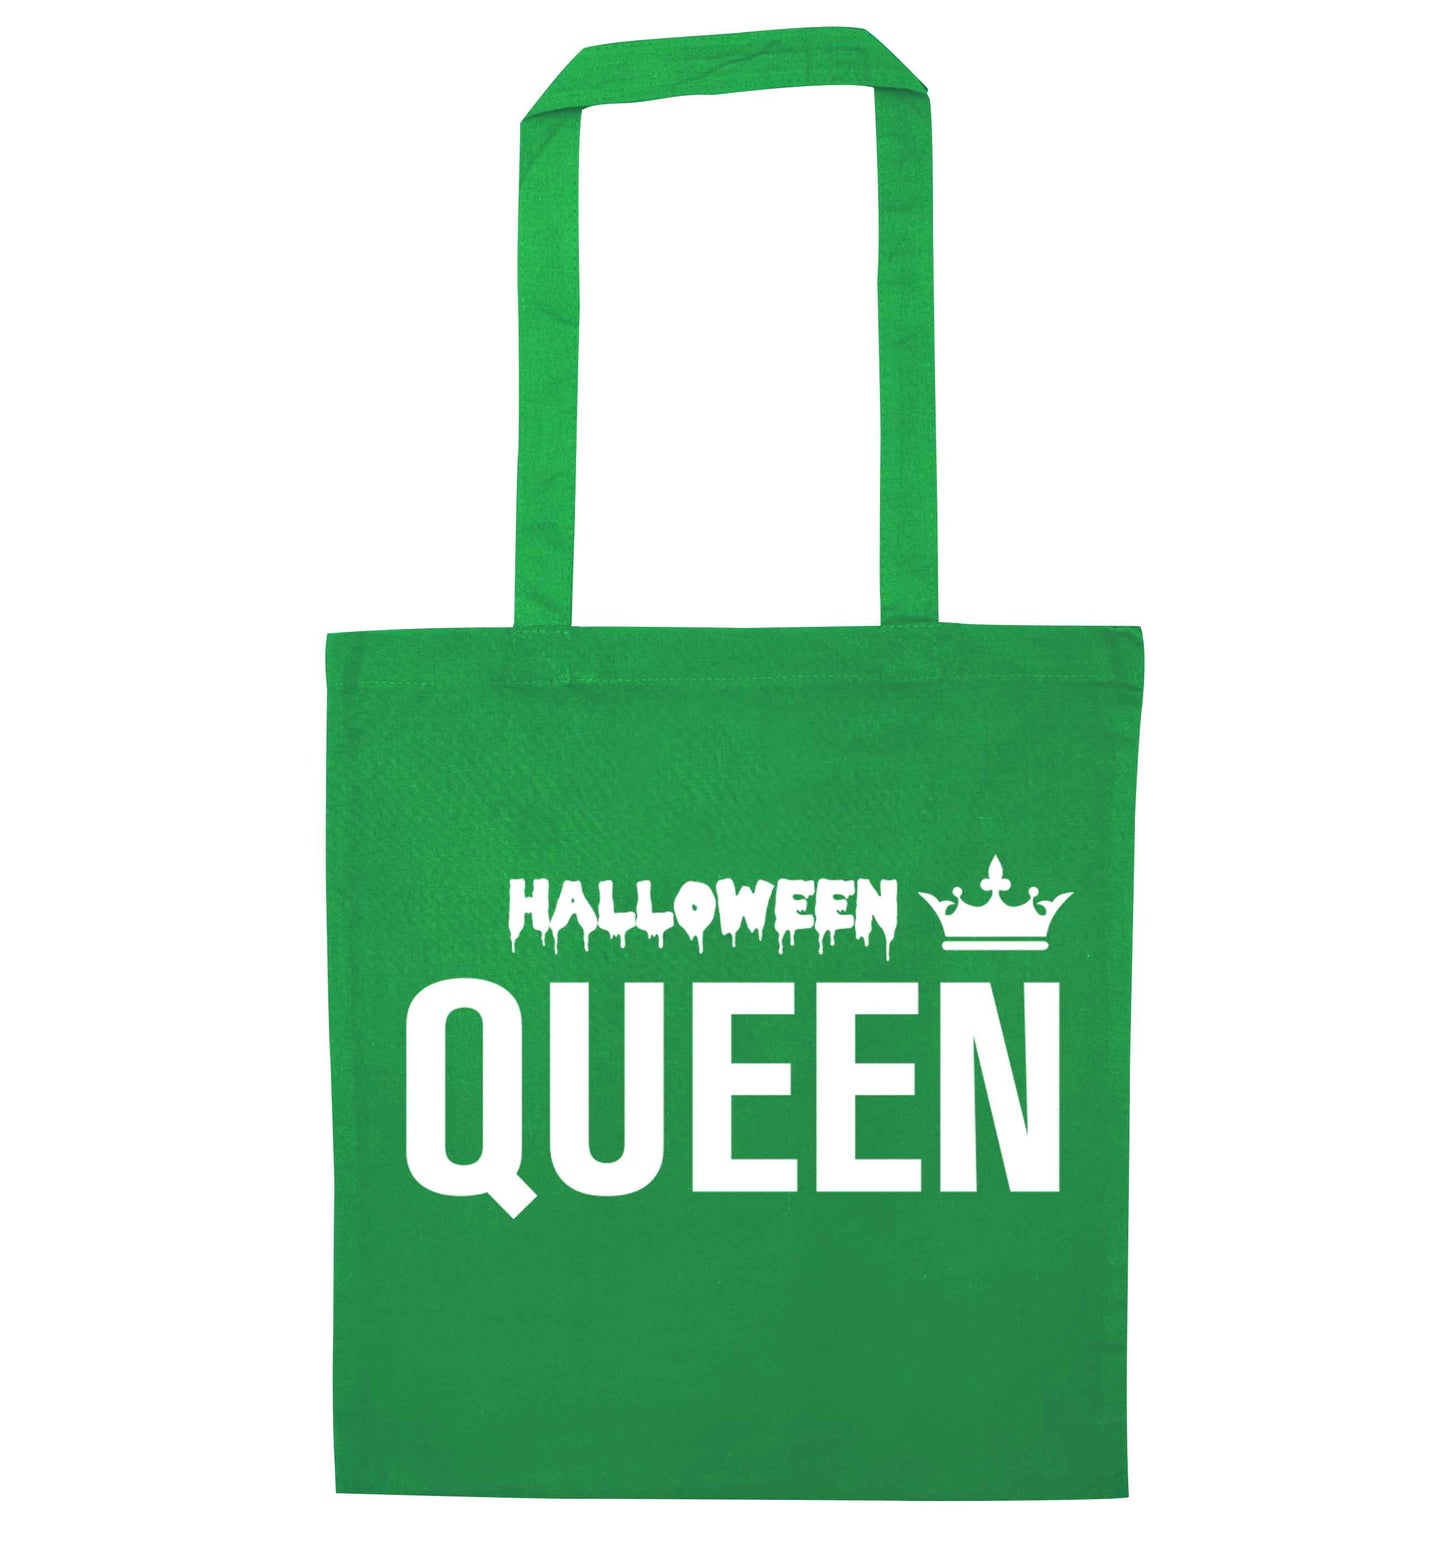 Halloween queen green tote bag